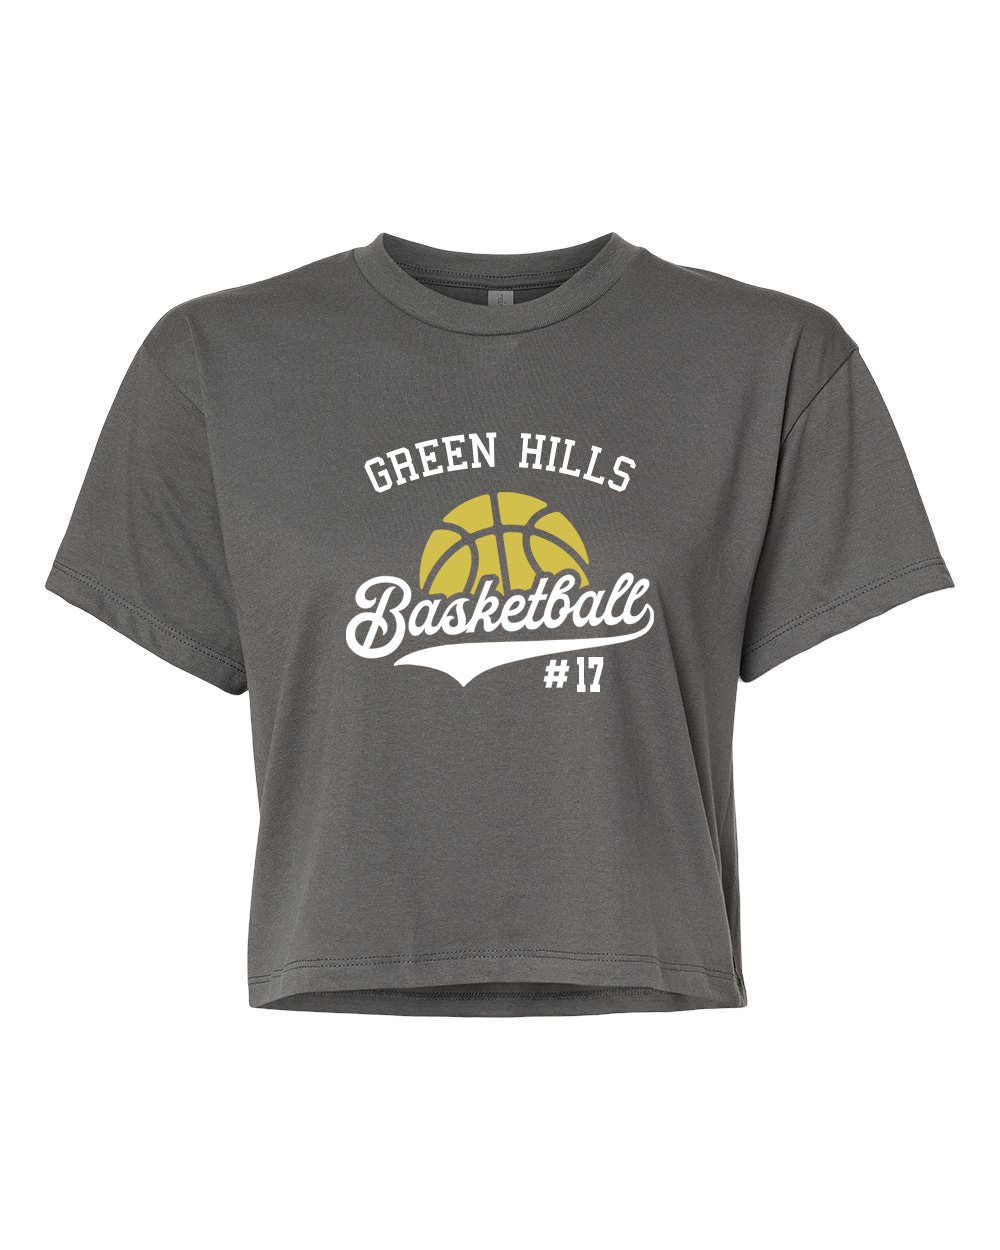 Green Hills Basketball Design 6 crop top